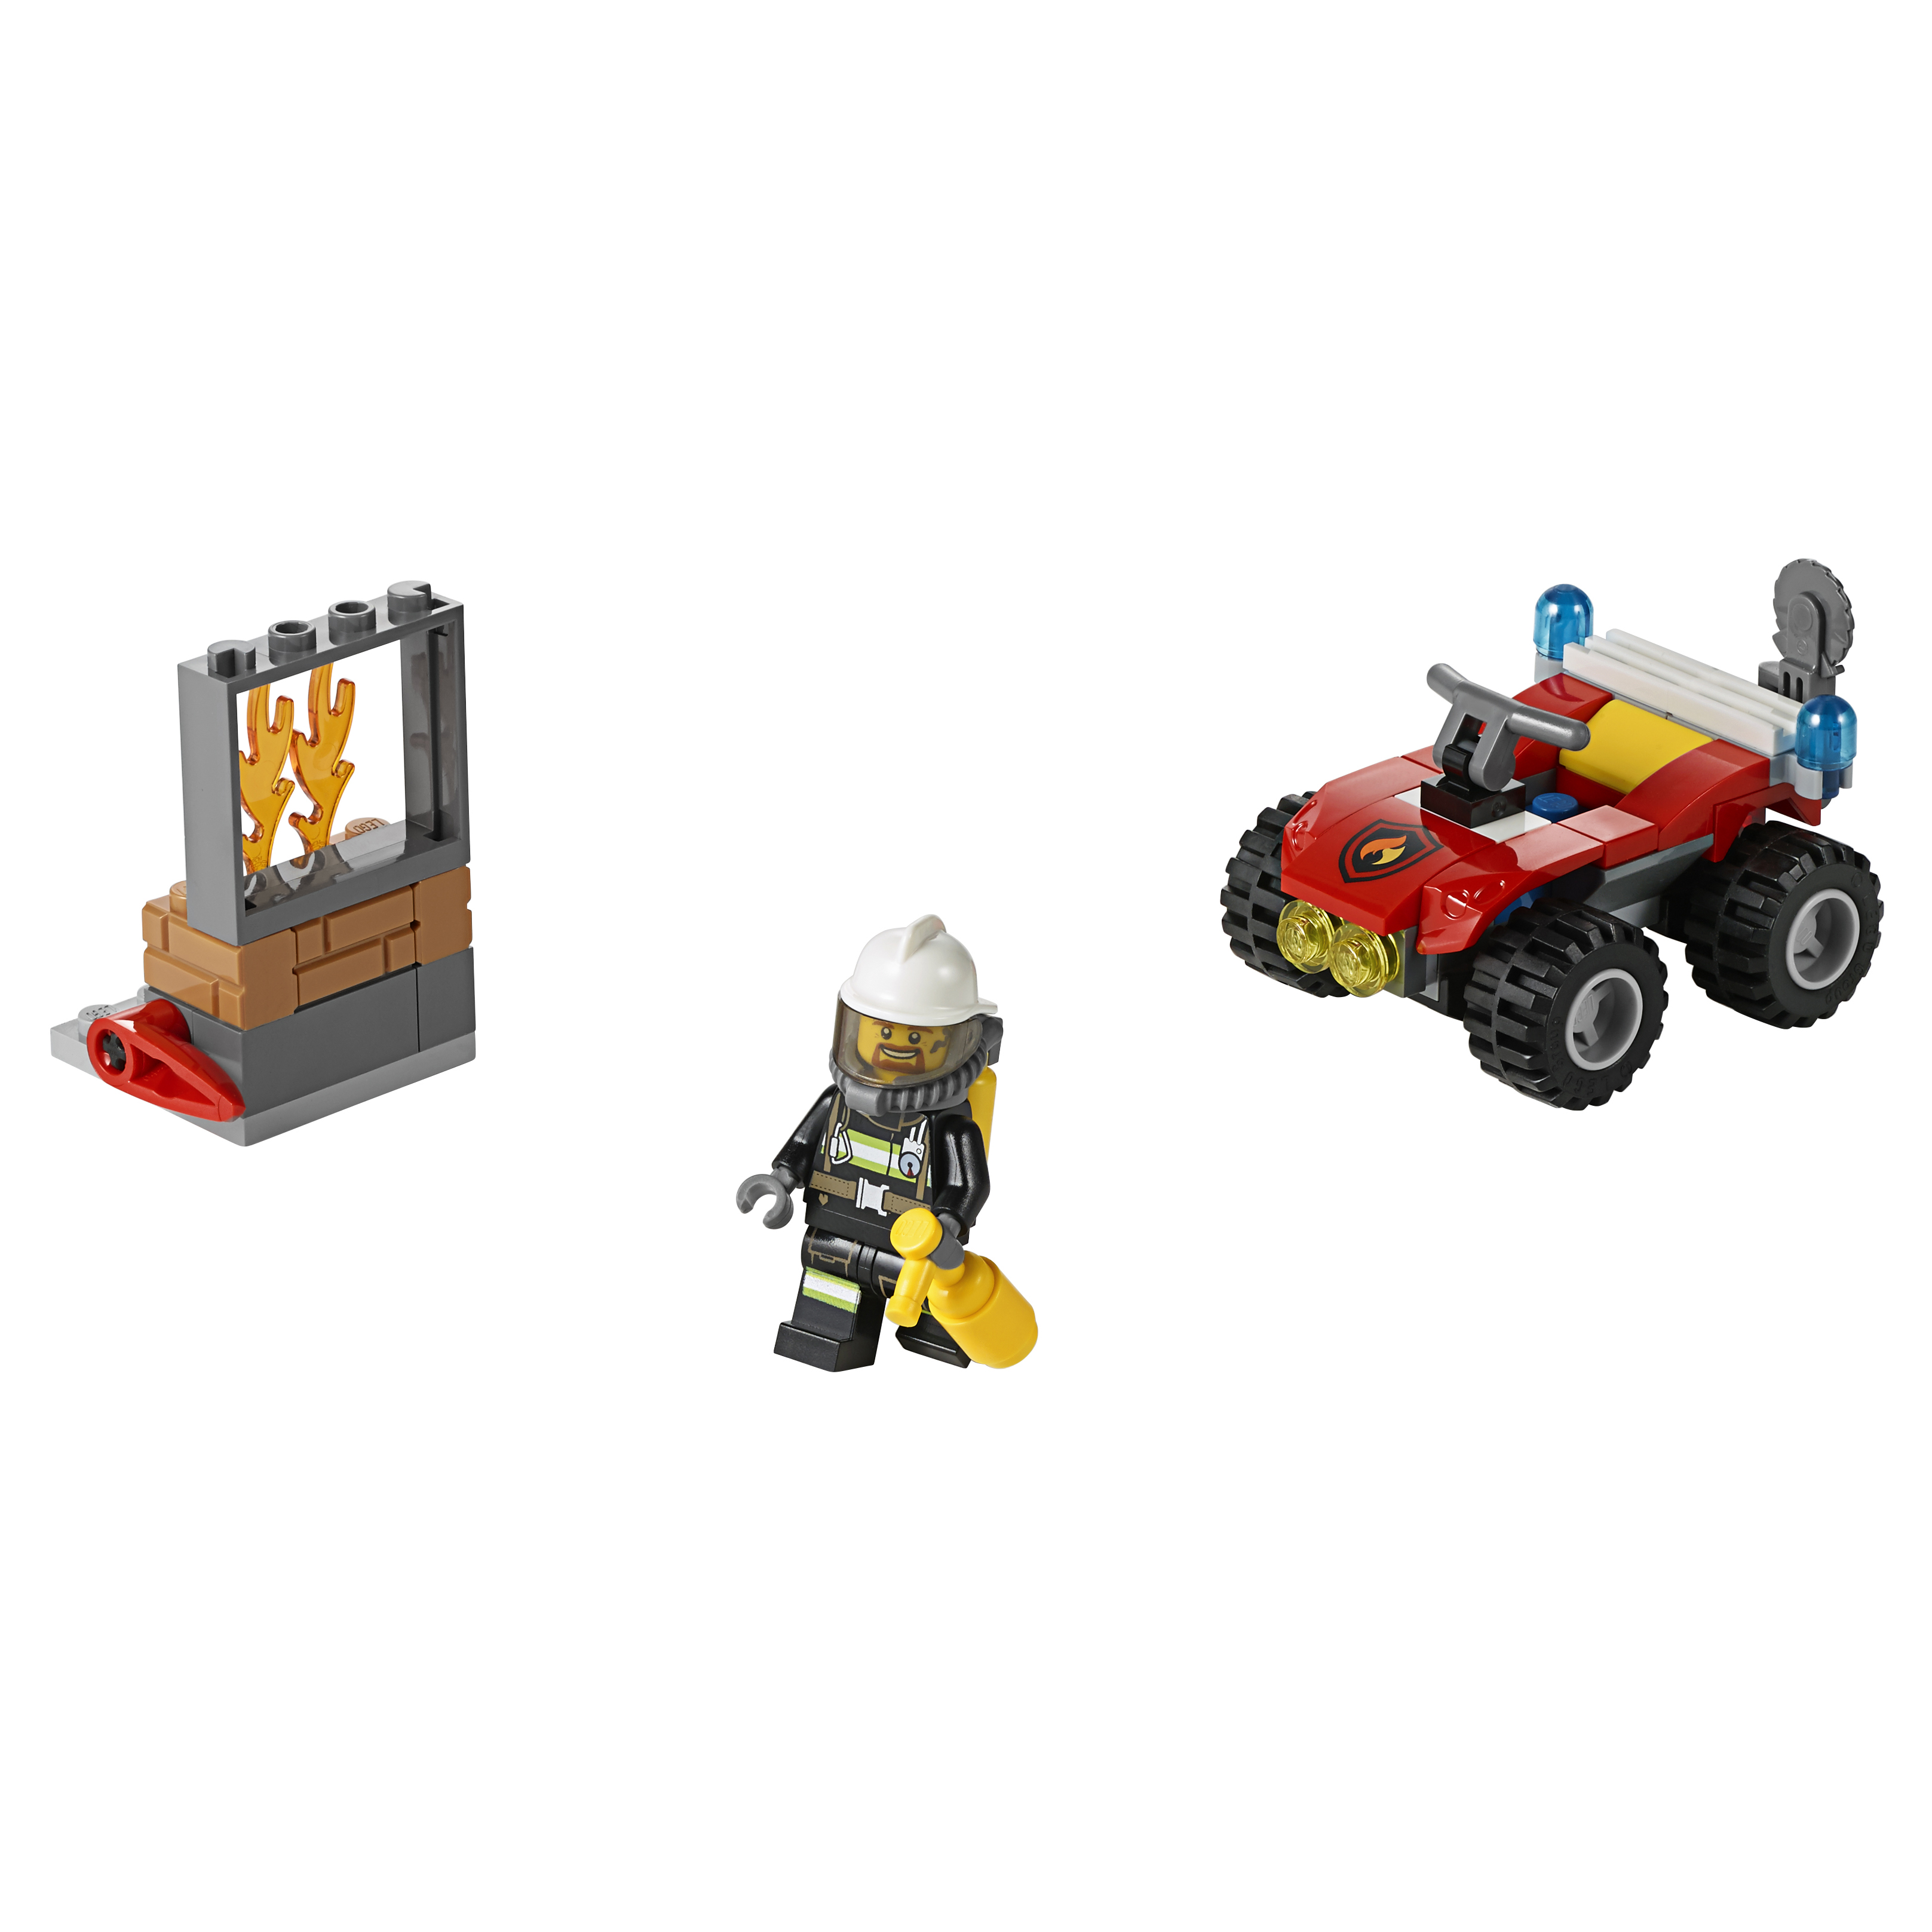 Конструктор LEGO City Fire Пожарный квадроцикл (60105) конструктор lego city fire пожарный квадроцикл 60105